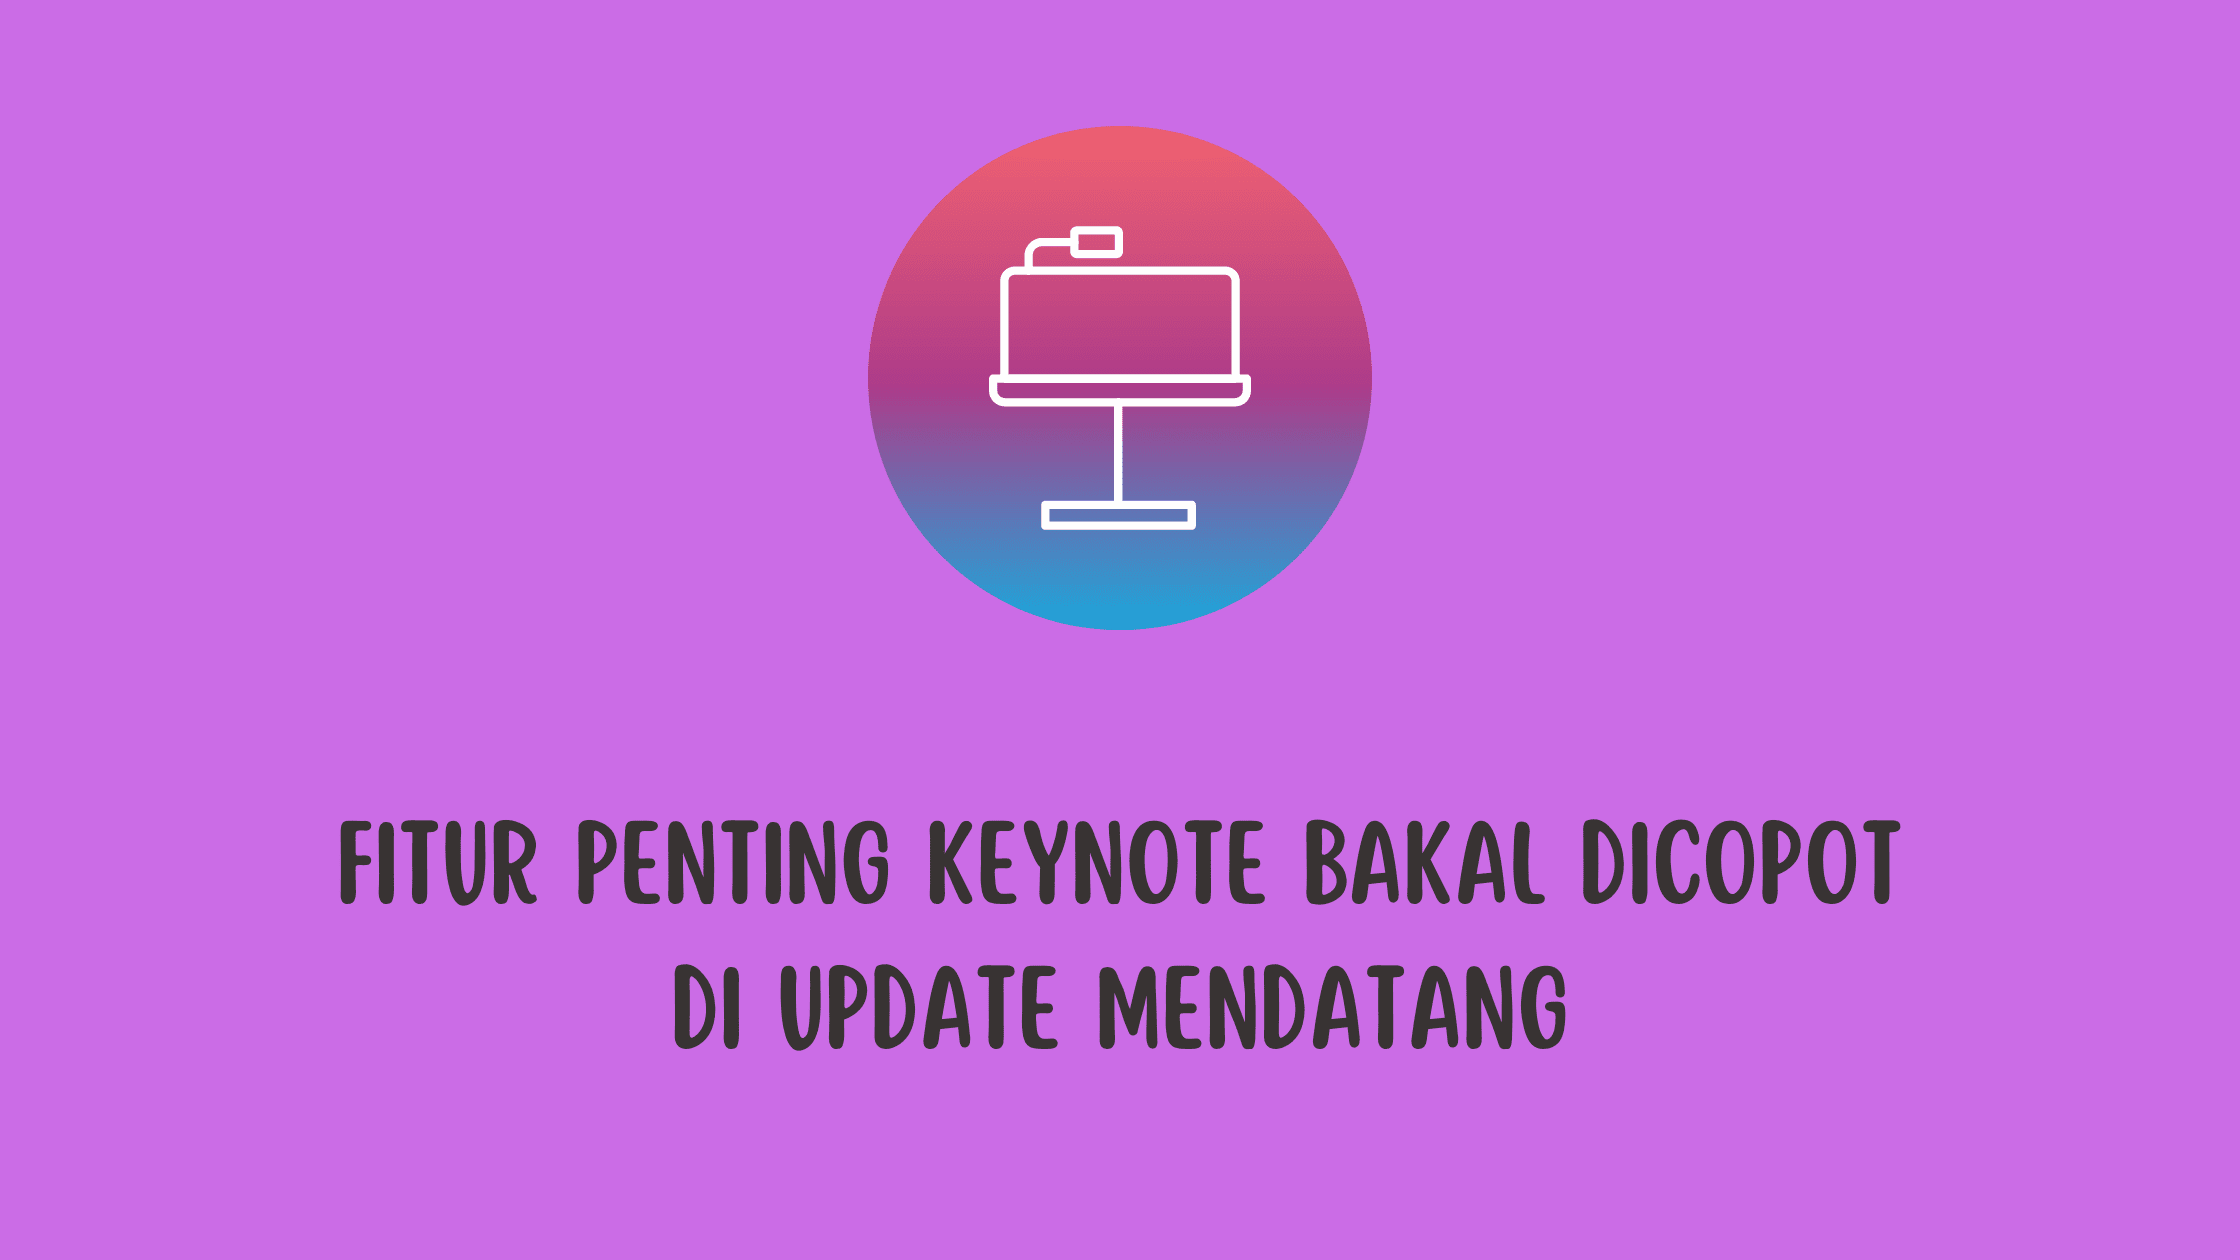 Fitur Penting Keynote Bakal Dicopot di Update Mendatang